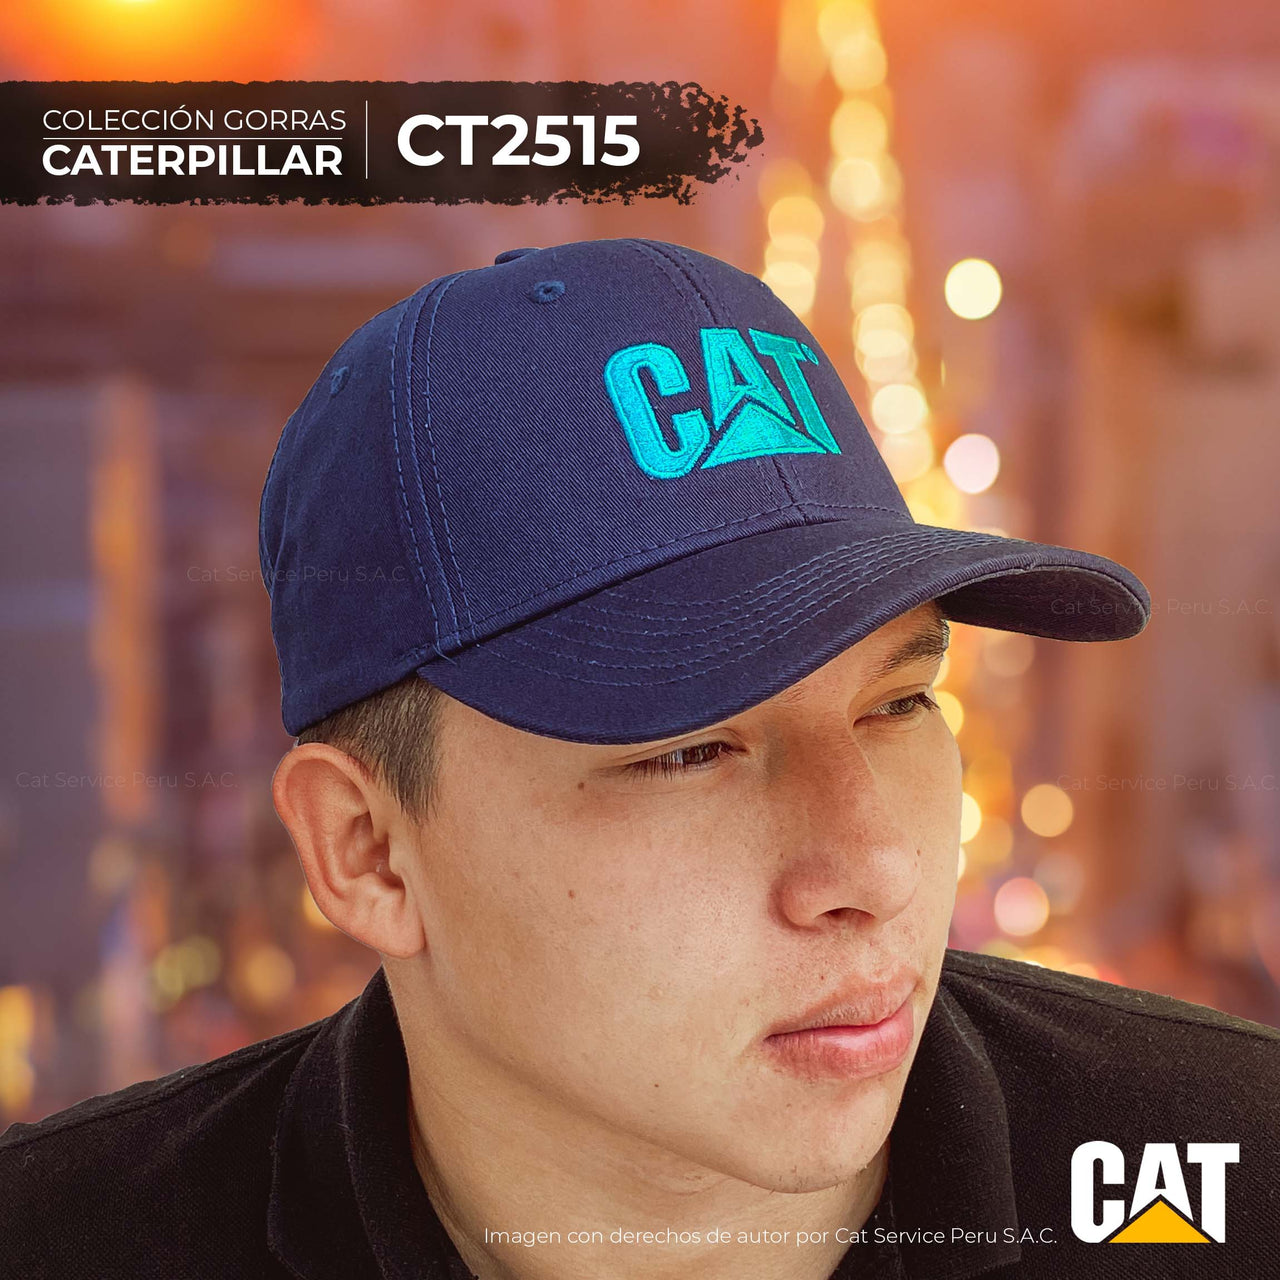 CT2515 Cat Wave Cap